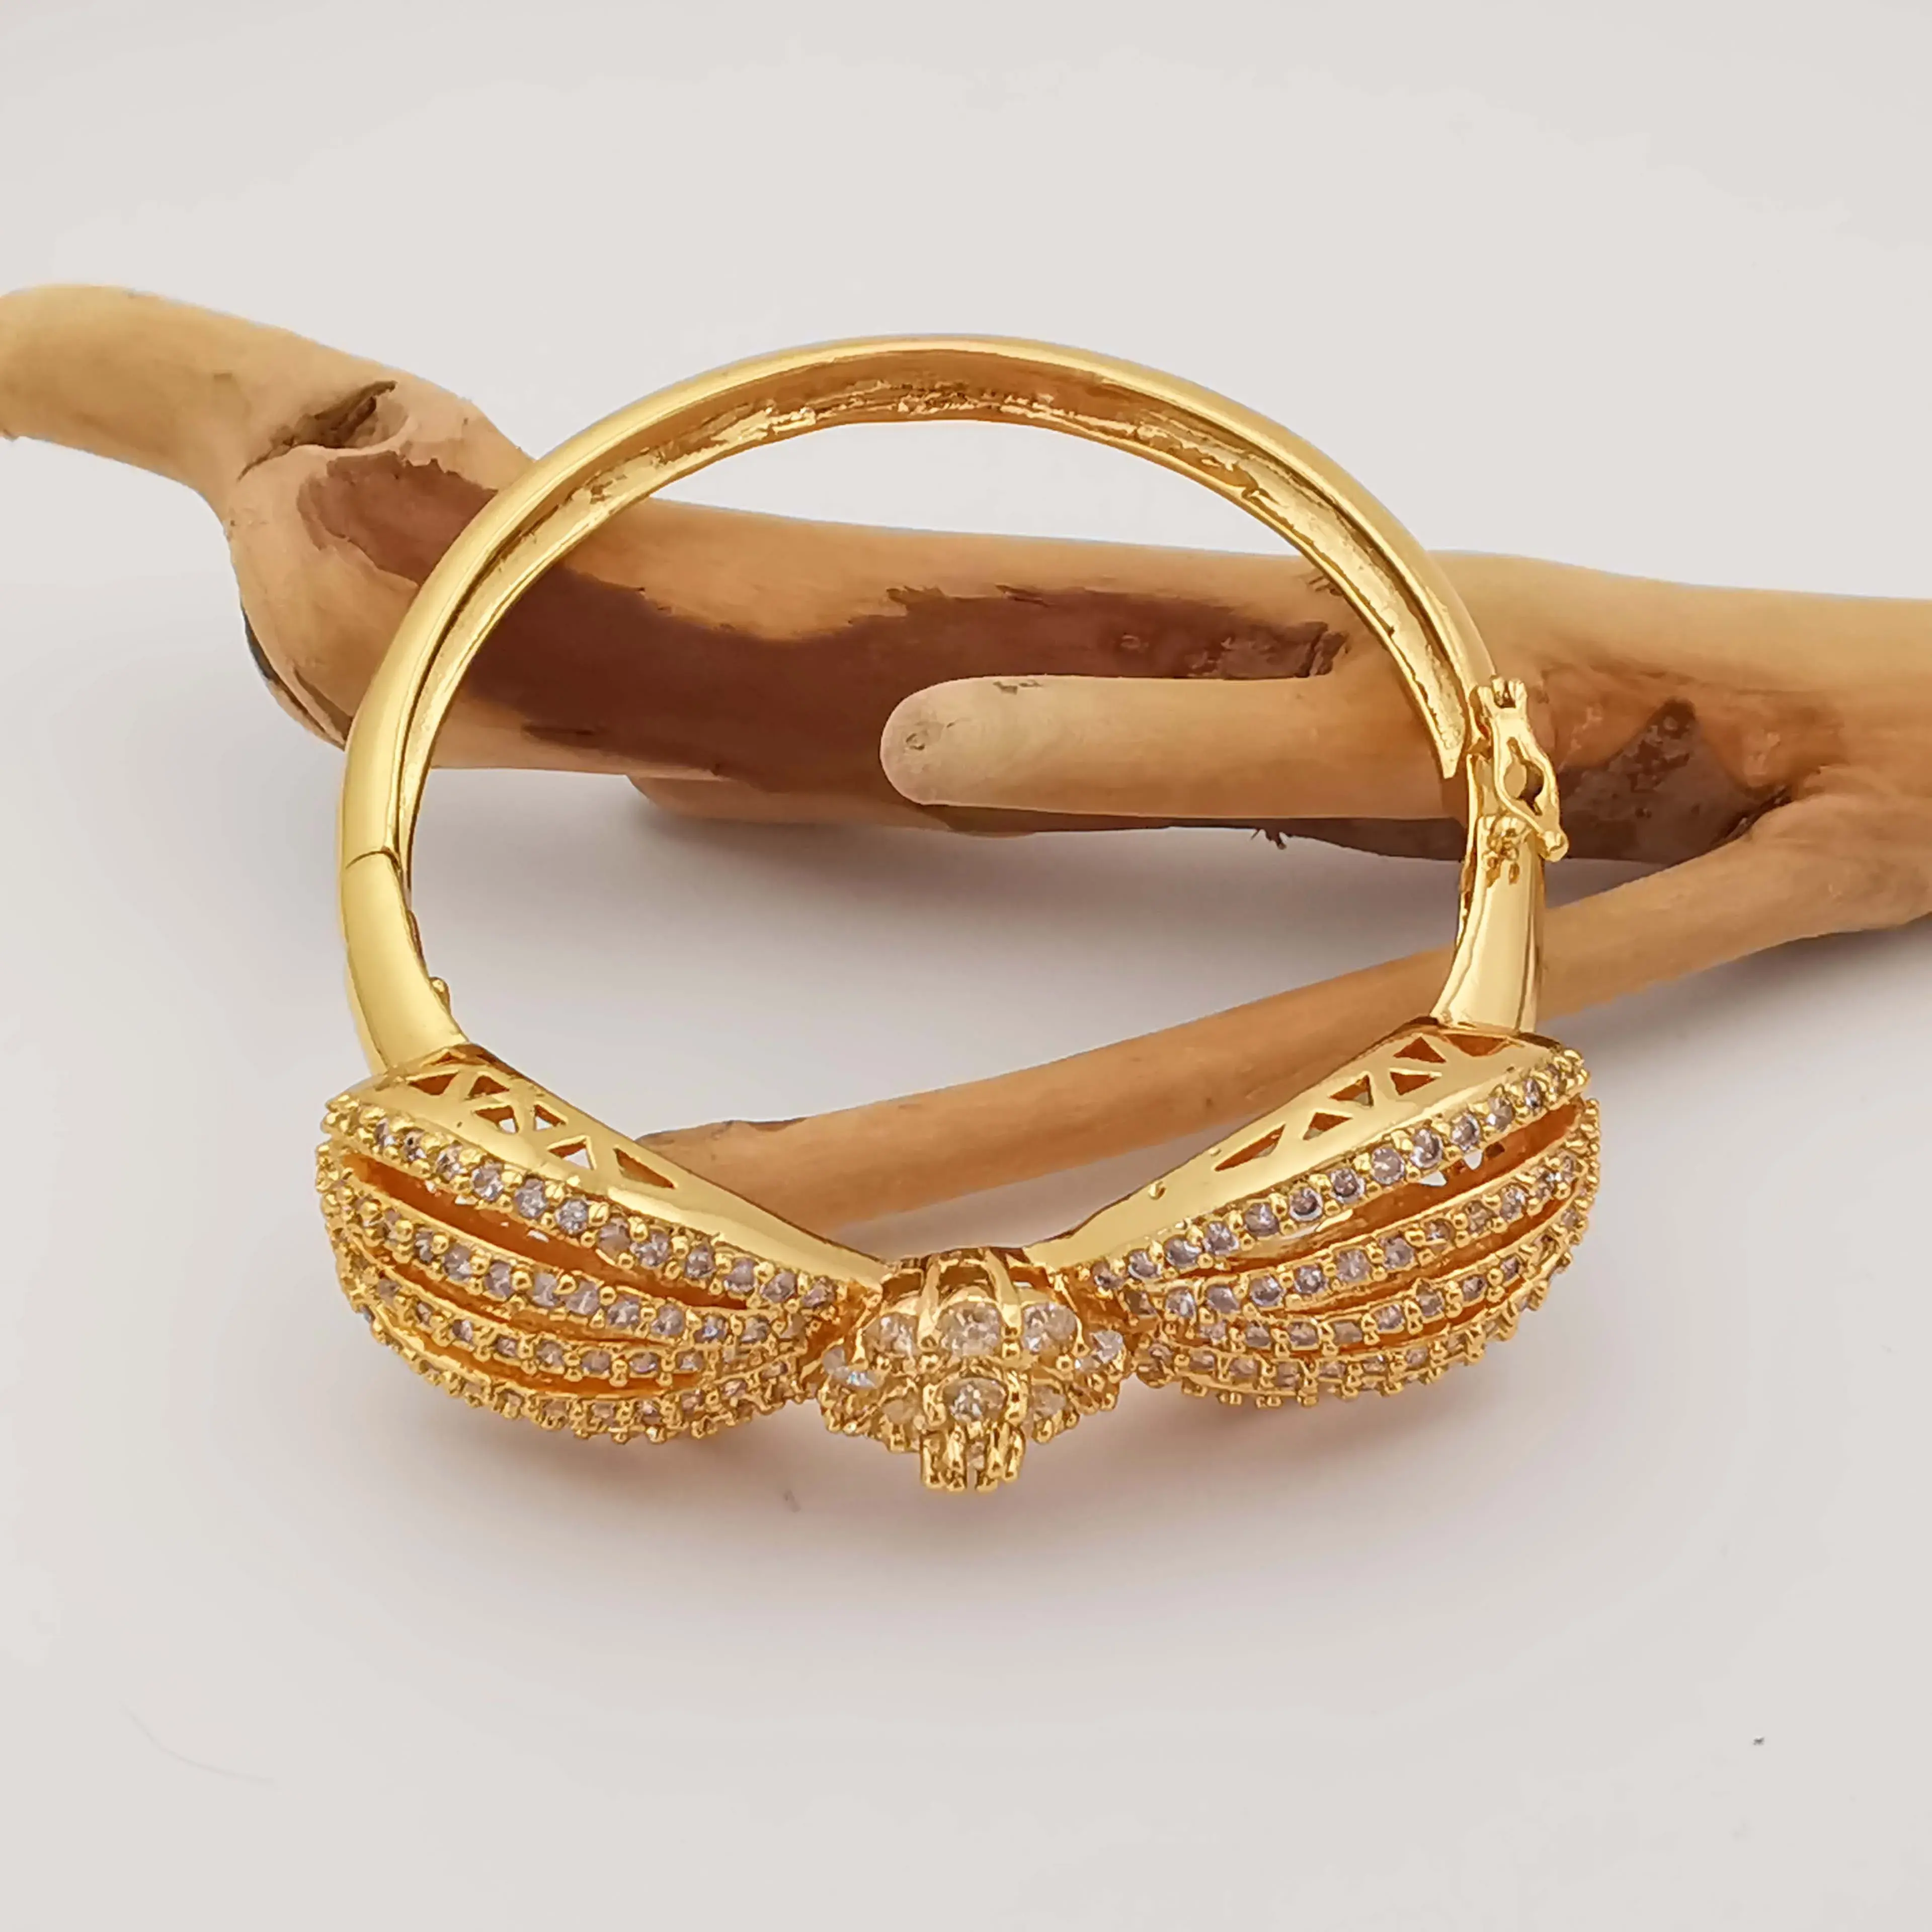 Nuova vendita calda gioielli moda donna matrimonio indiano 18K placcato oro fiocco in resina braccialetto elastico adatto per abiti da sposa Ma